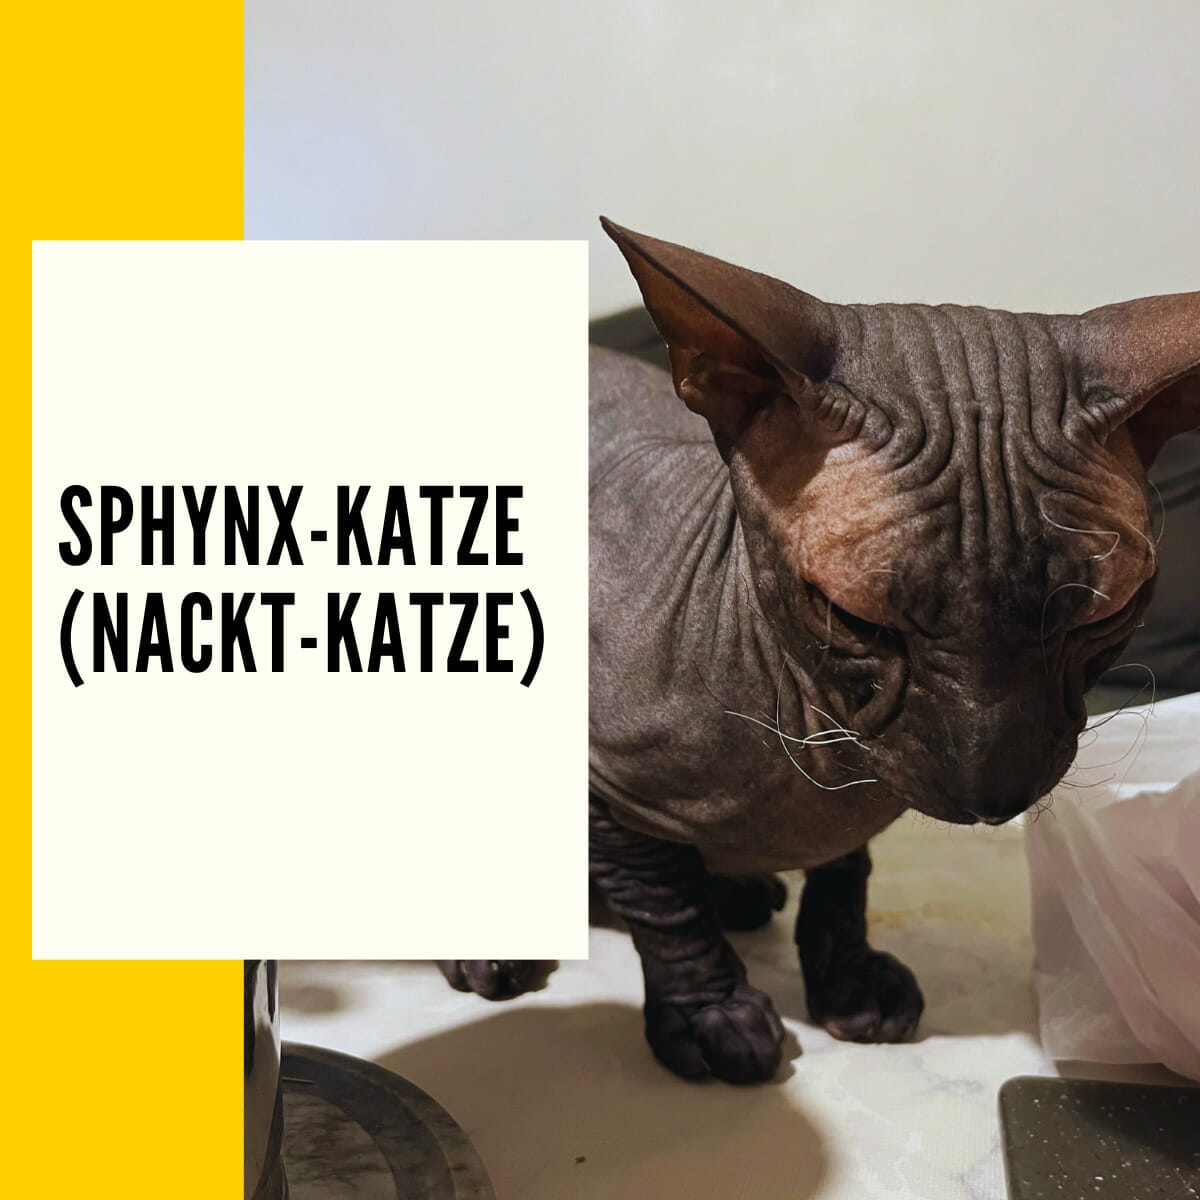 Sphynx-Katze (Nacktkatze) - Alle Informationen über Herkunft & Haltung und einen Rassenportrait über diese Nacktkatze findest du in diesem Artikel.